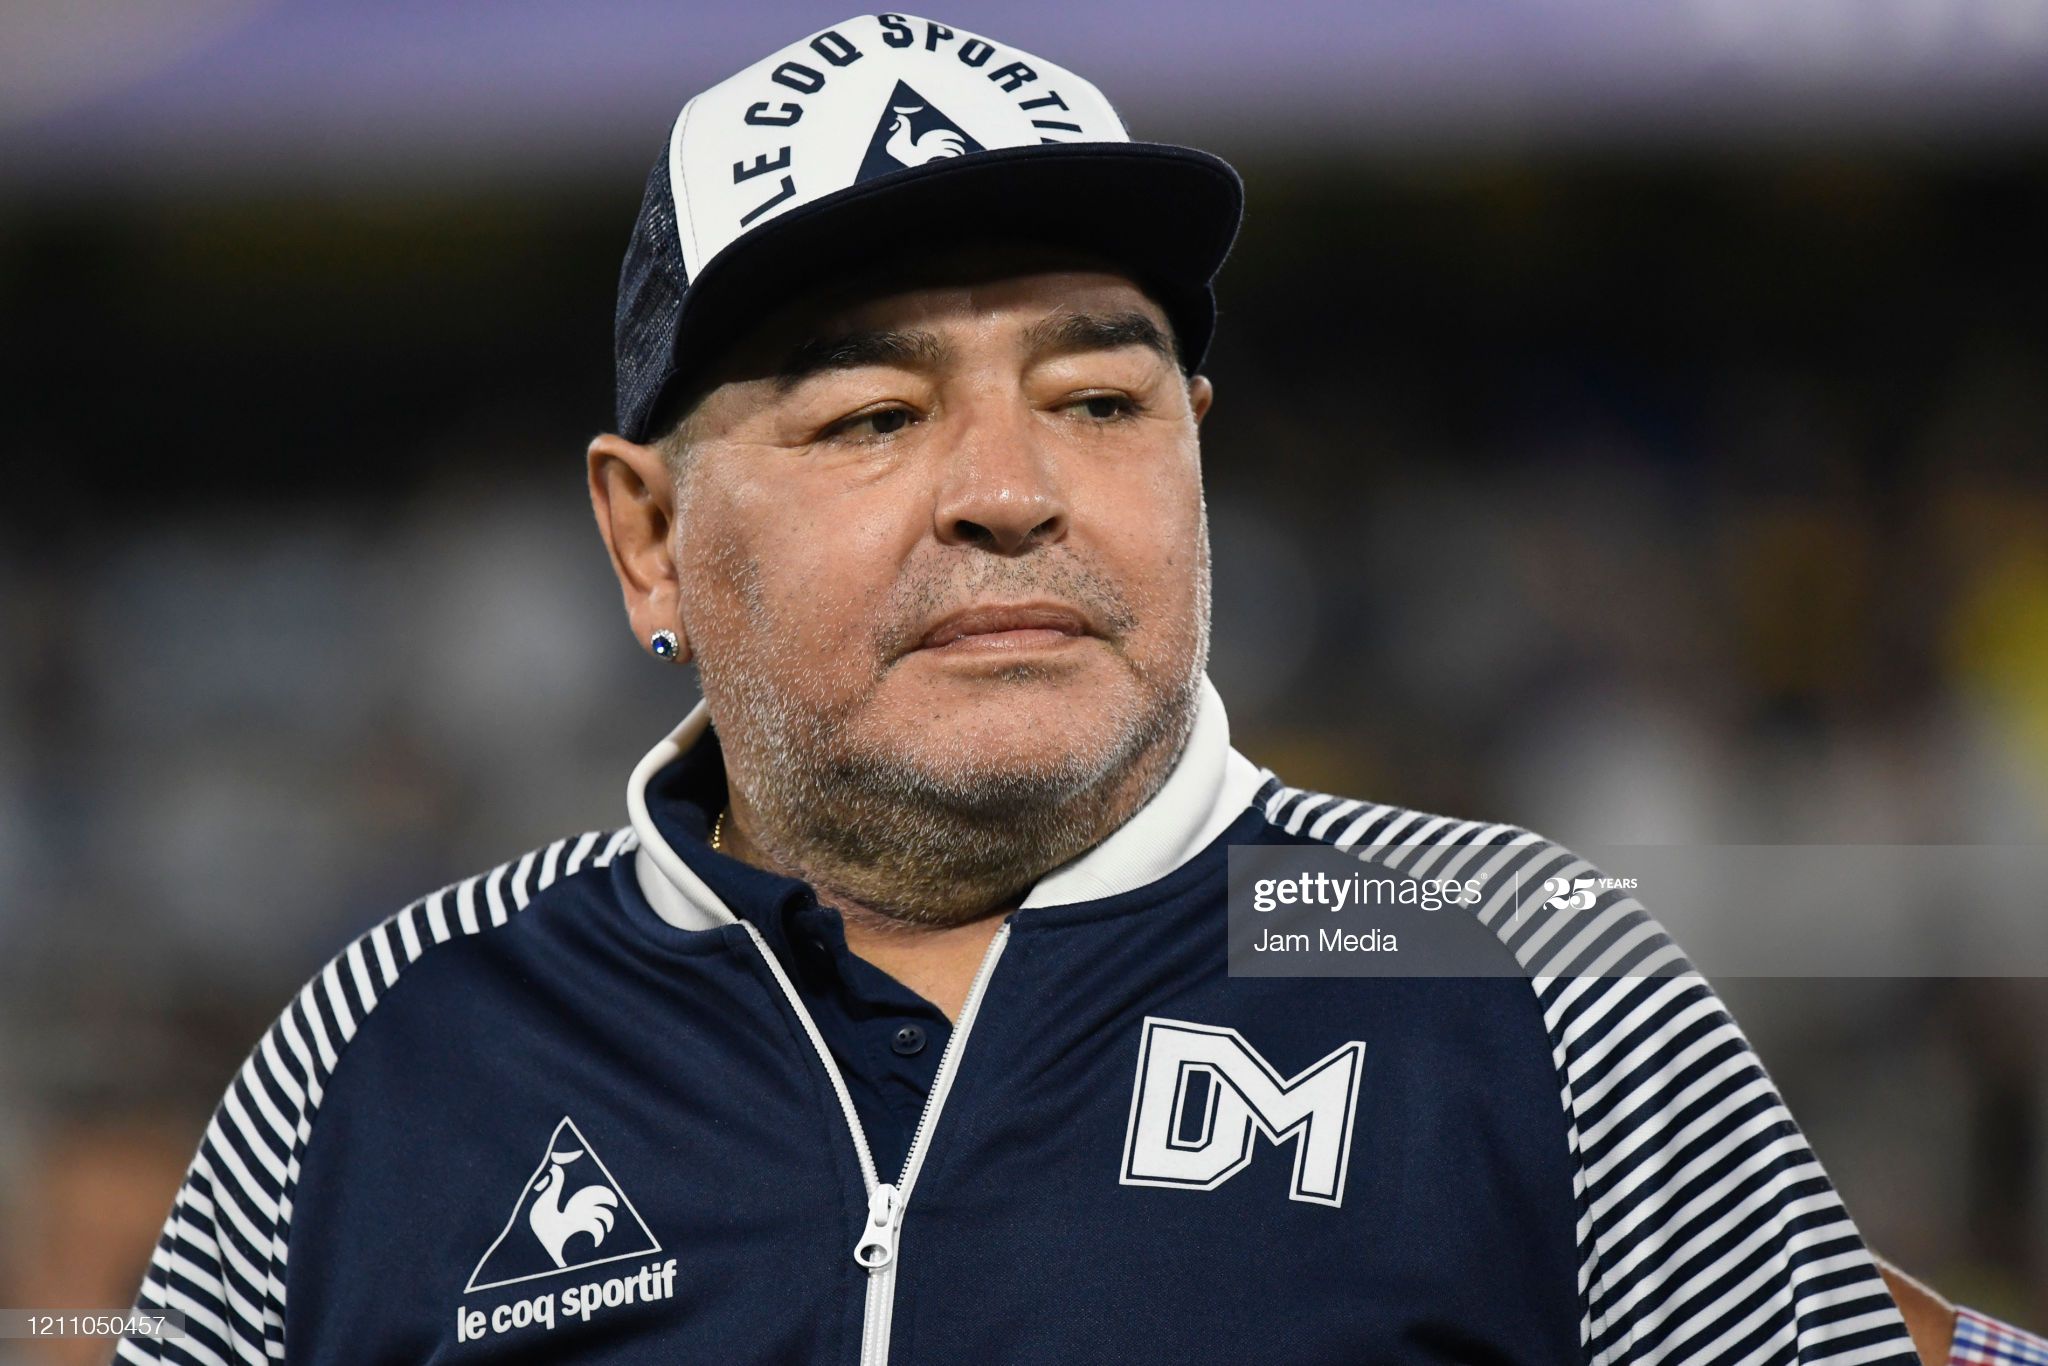 Diego Maradona nagy vagyonnal rendelkezett, ezért is döbbenetes, hogy utolsó napjait milyen körülmények között töltötte / Fotó: Getty Images